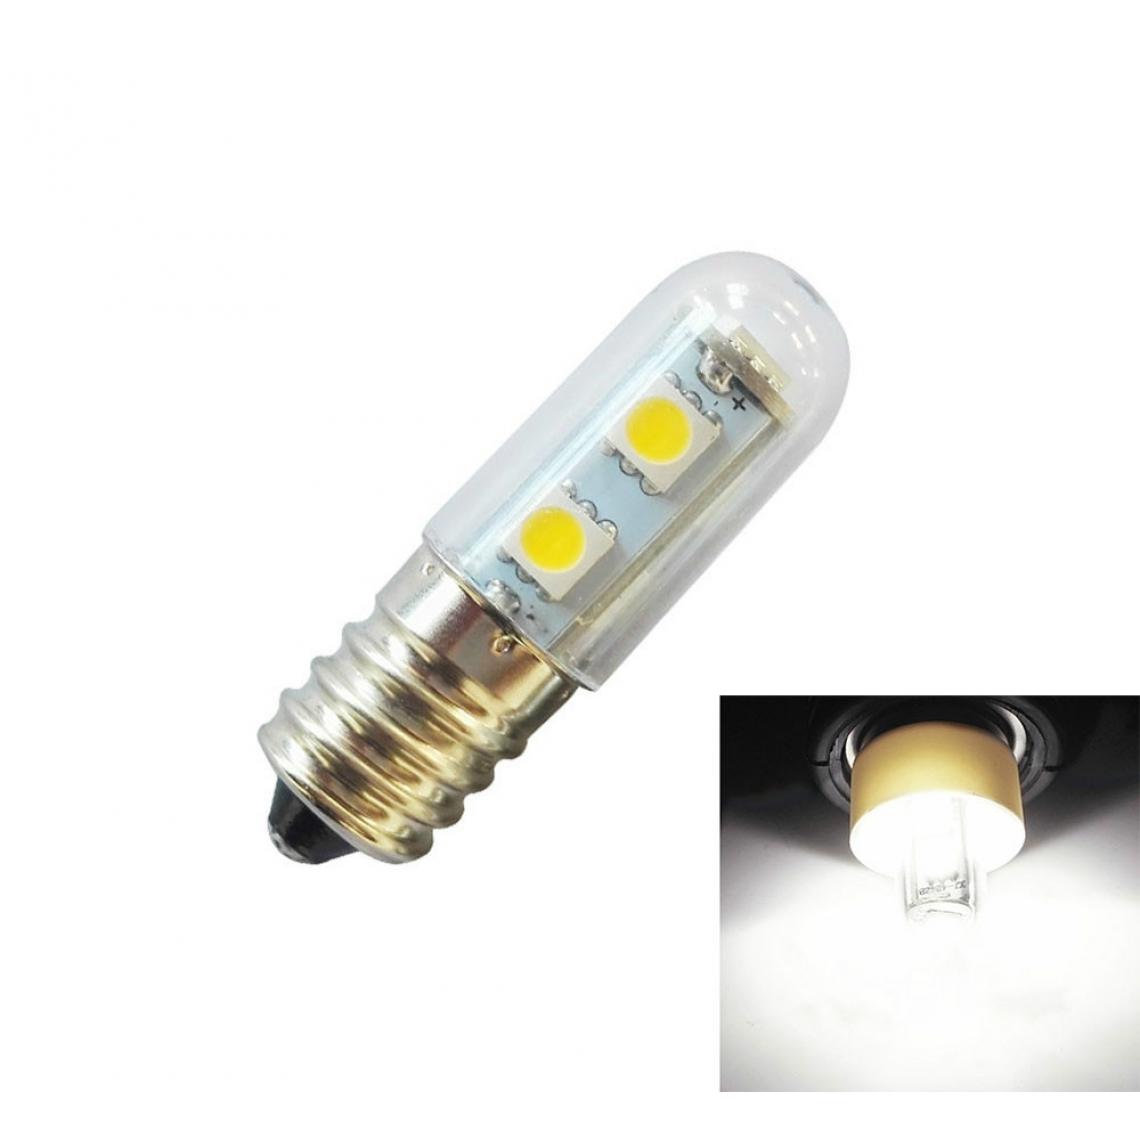 Wewoo - E14 vis lumière LED ampoule de réfrigérateur 1W 220V AC 7 SMD 5050 ampères maison Cool White - Ampoules LED